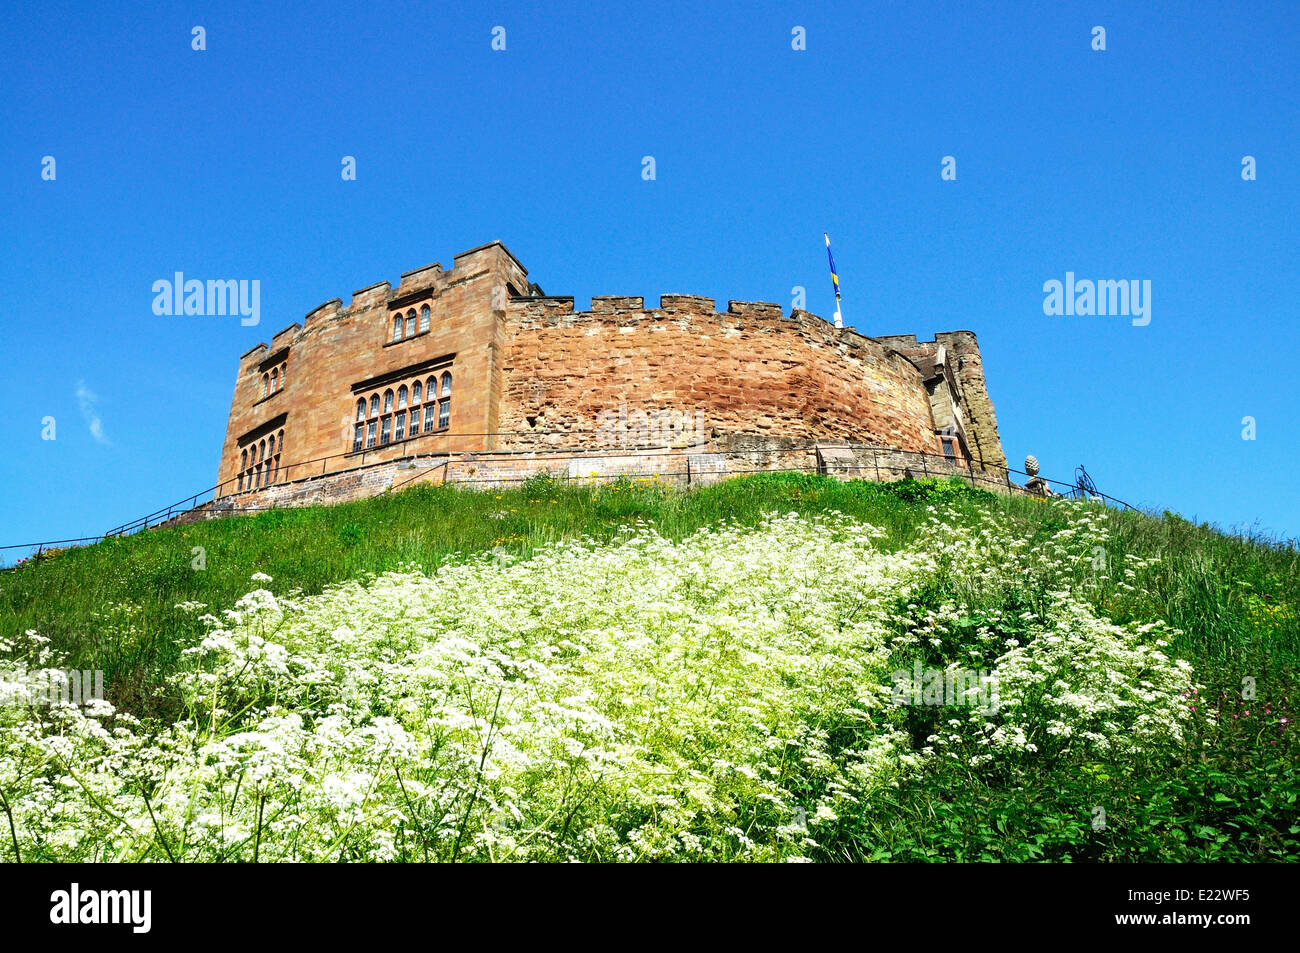 Blick auf die Burg, Tamworth, Staffordshire, England, UK, Westeuropa. Stockfoto